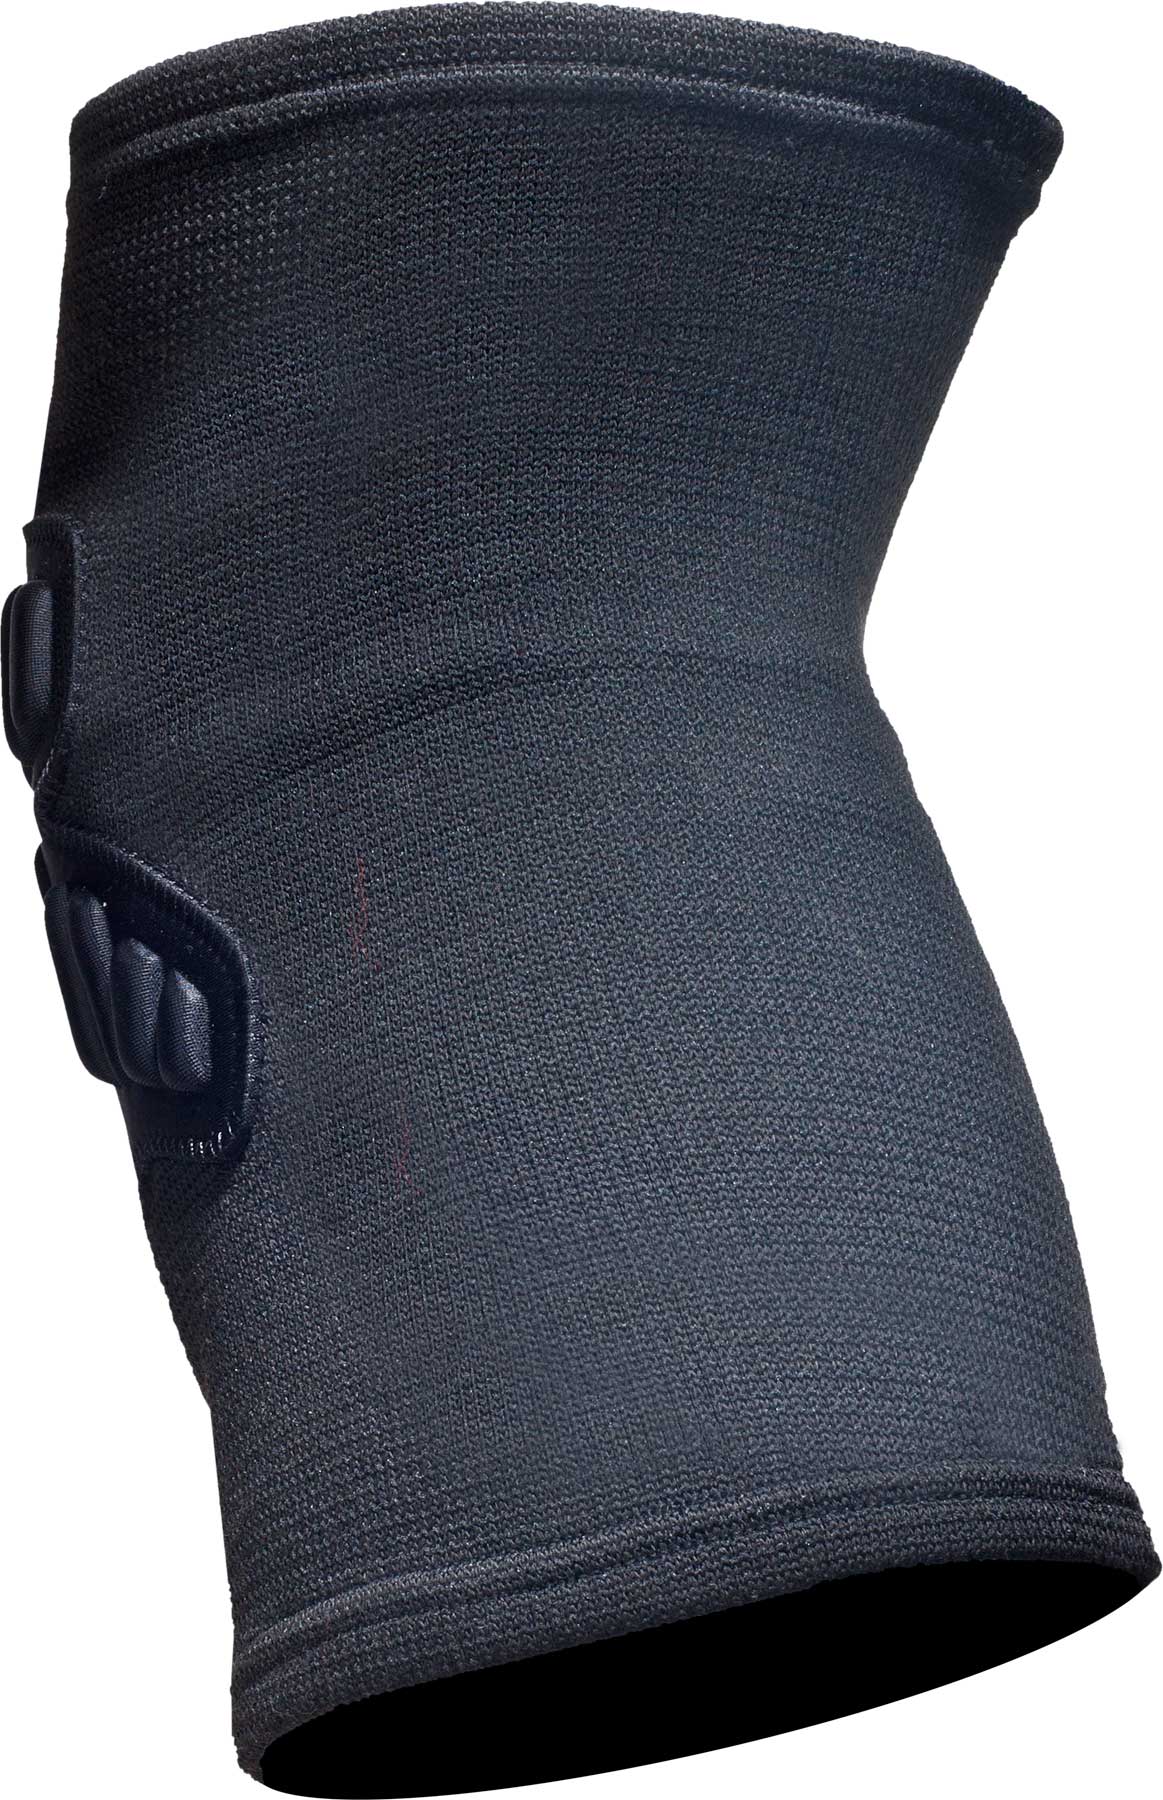 Amplifi Knee Sleeve knee protection black